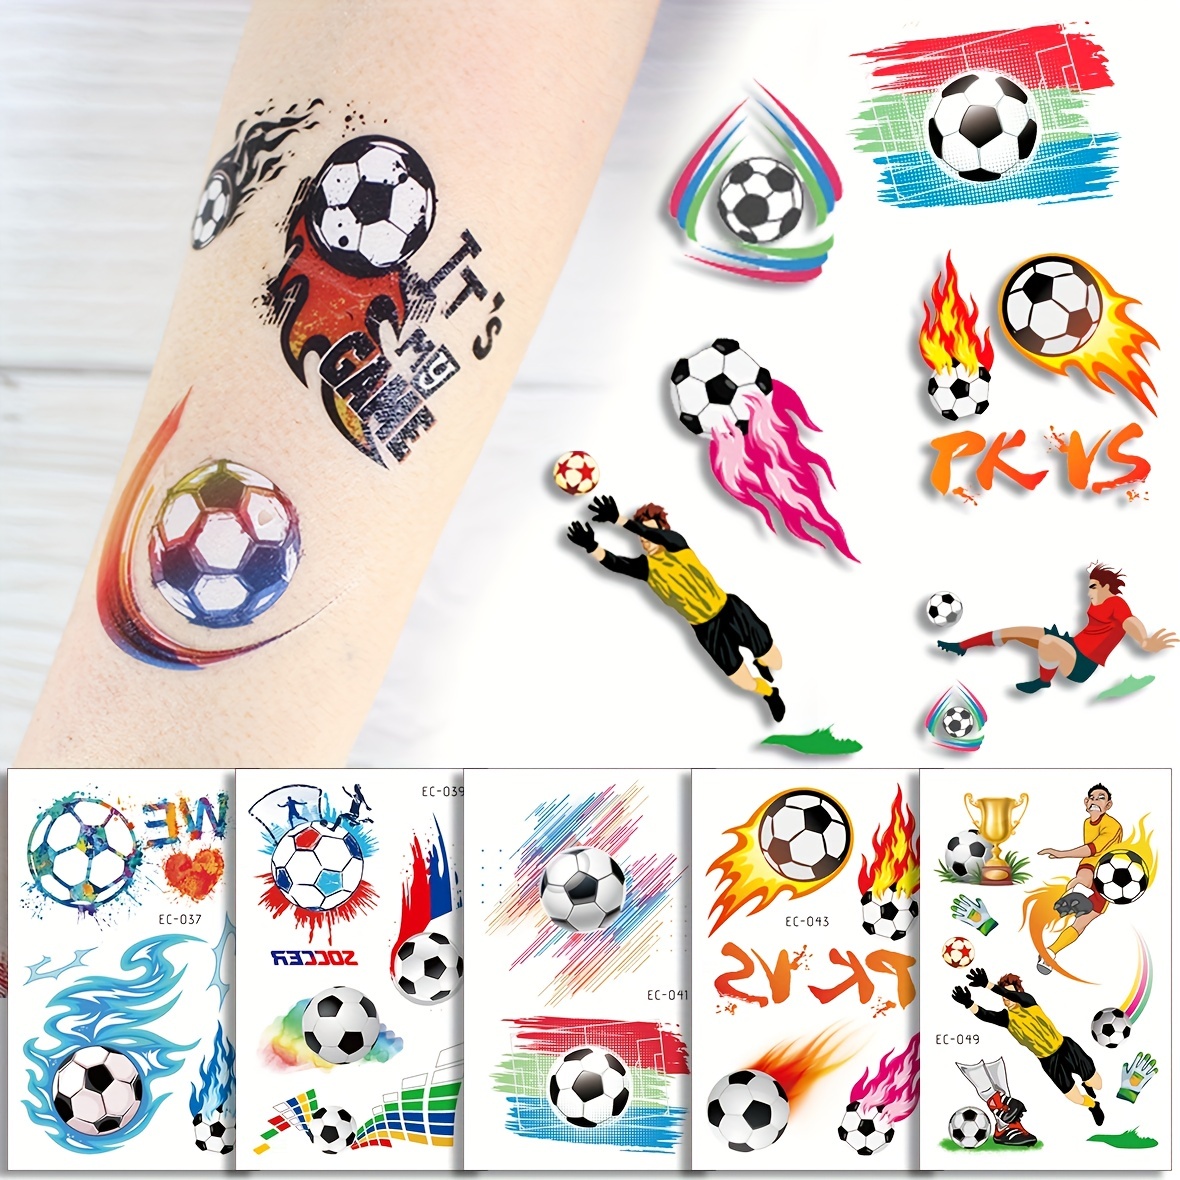  Soccer Award Temporary Tattoos - Soccer Tattoos As